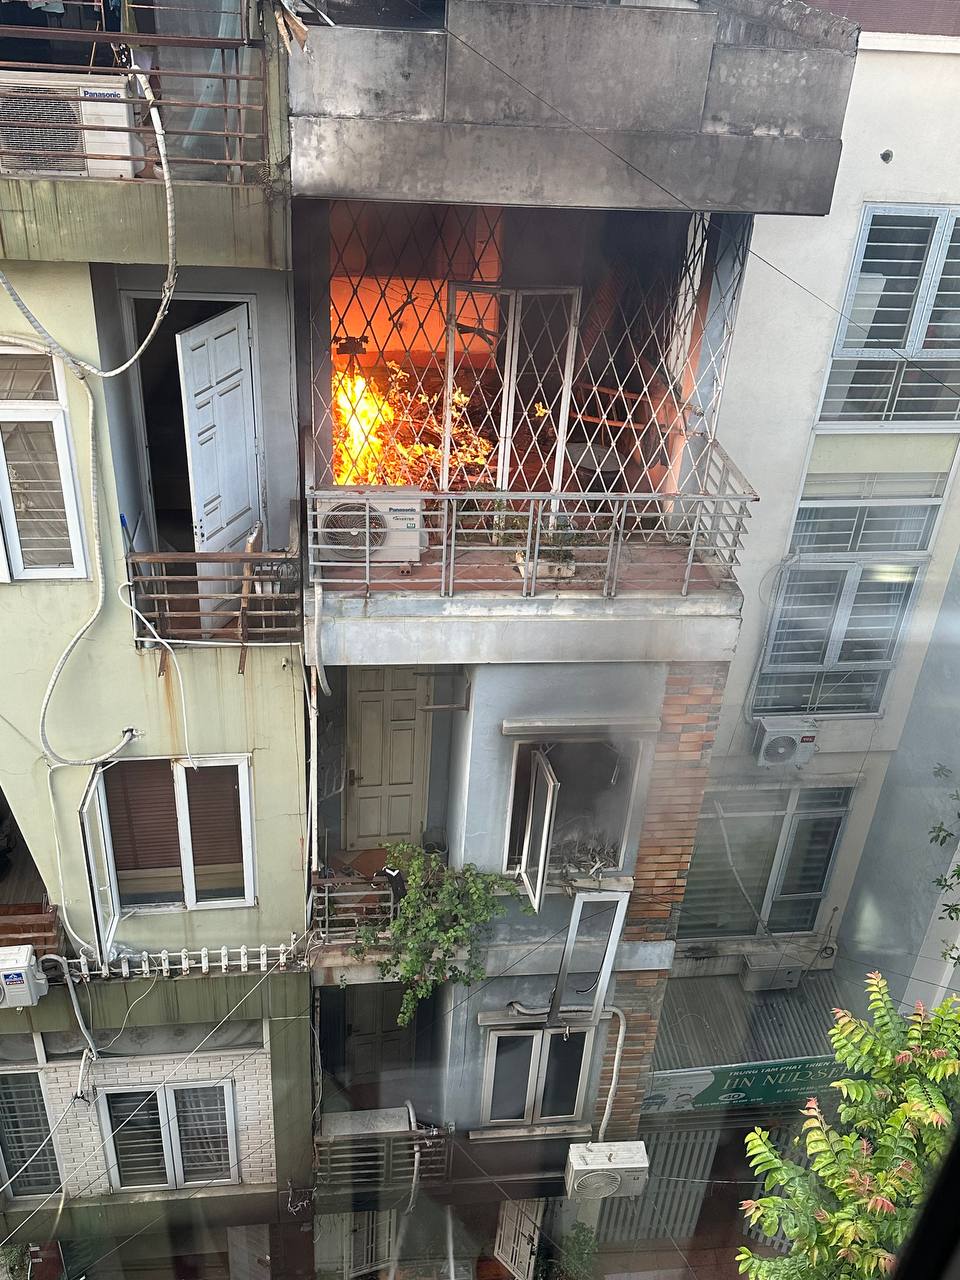 Nóng: Cháy lớn tại căn nhà 4 tầng ở Hà Nội, 2 bé trai cùng gia đình leo ban công thoát thân - Ảnh 1.